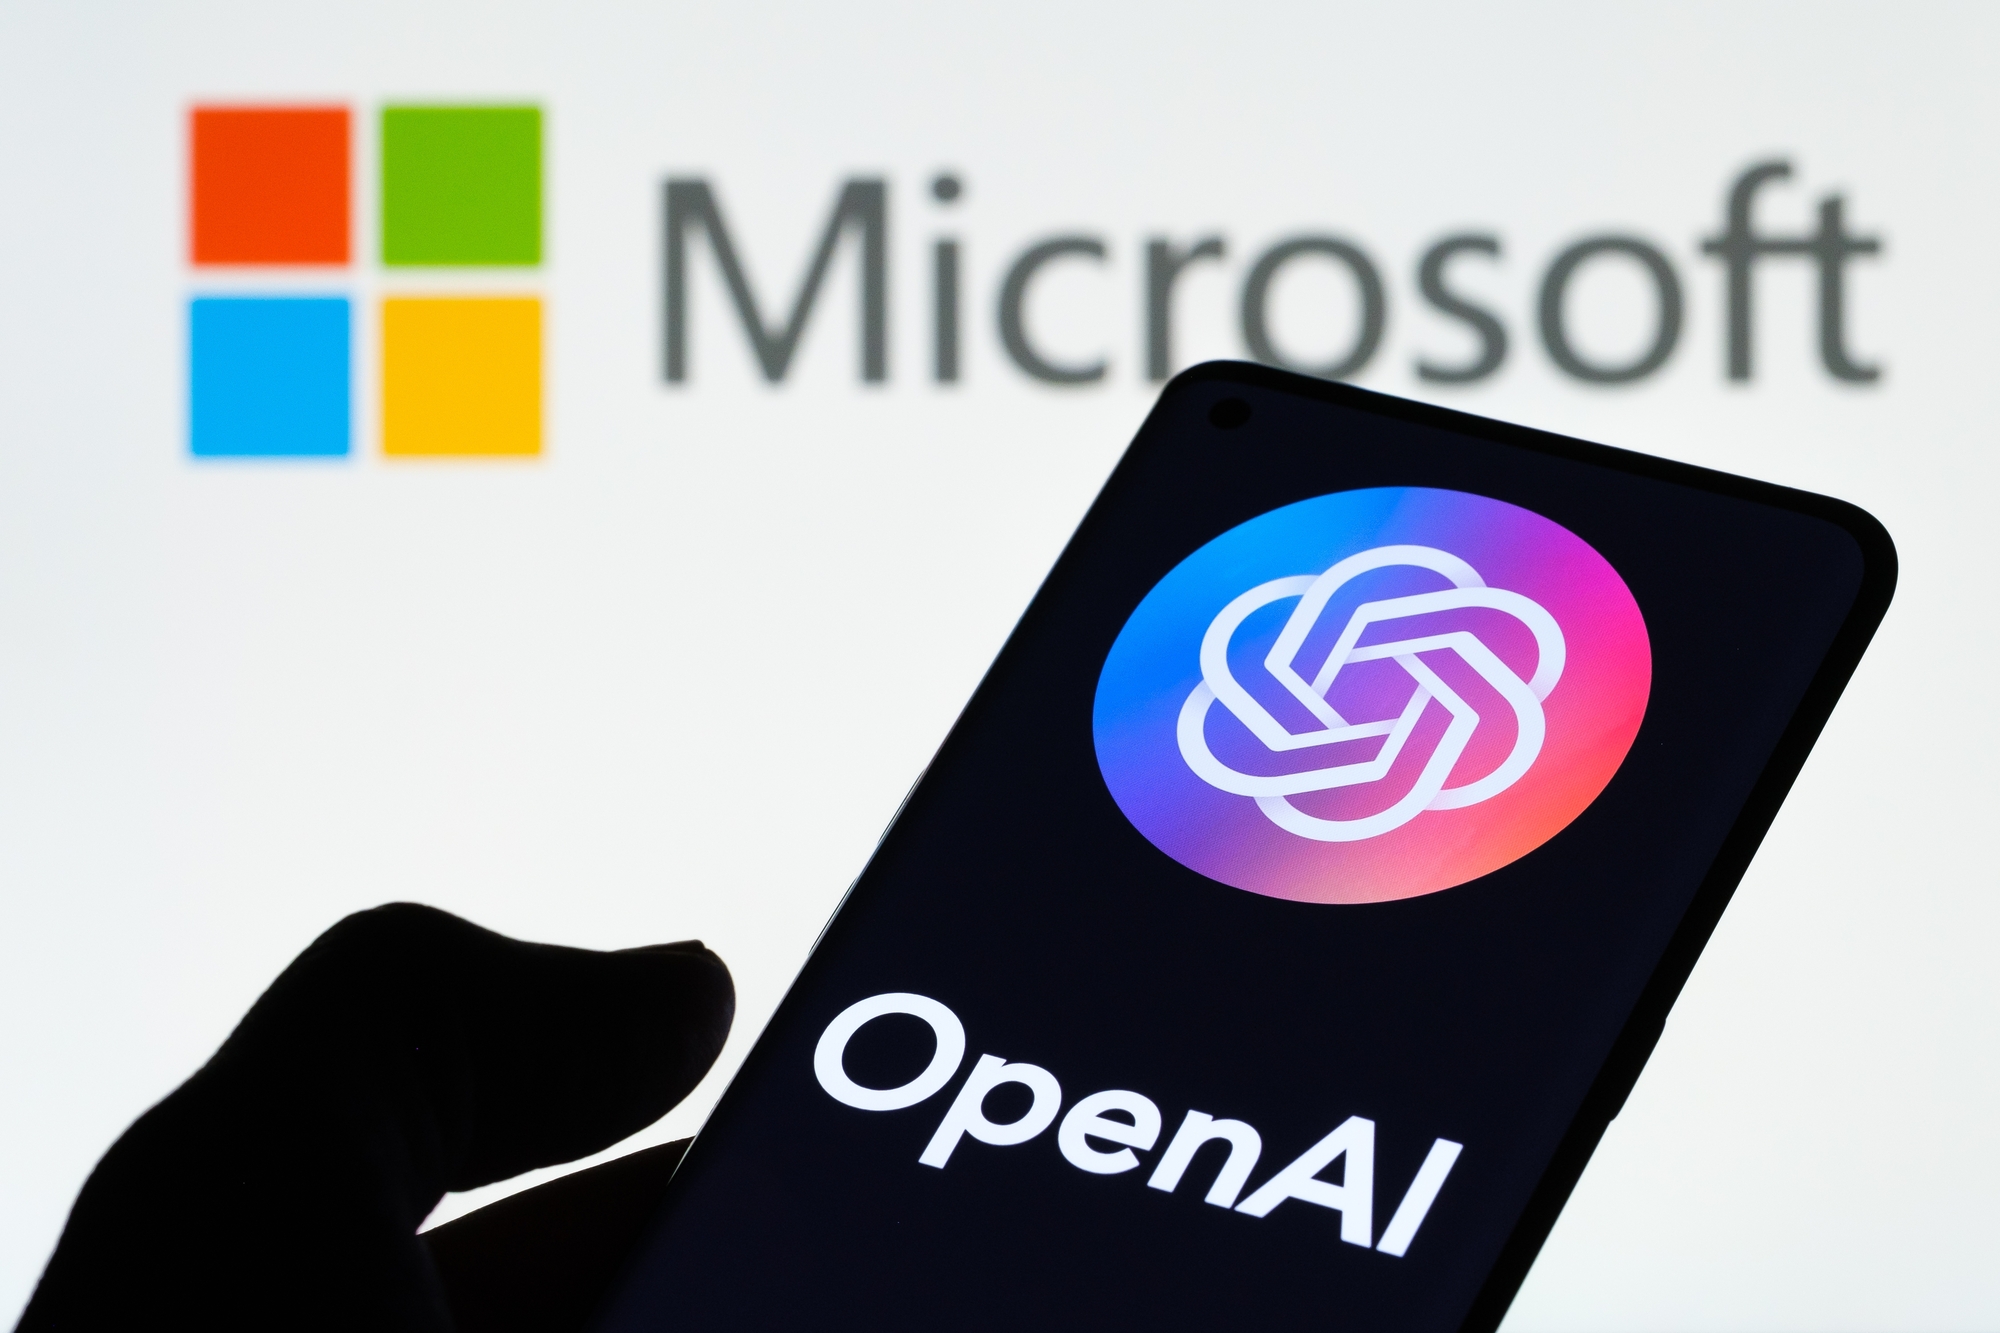 Affaire OpenAI (ChatGPT) : Microsoft va avoir sa place au sein du nouveau conseil d'administration